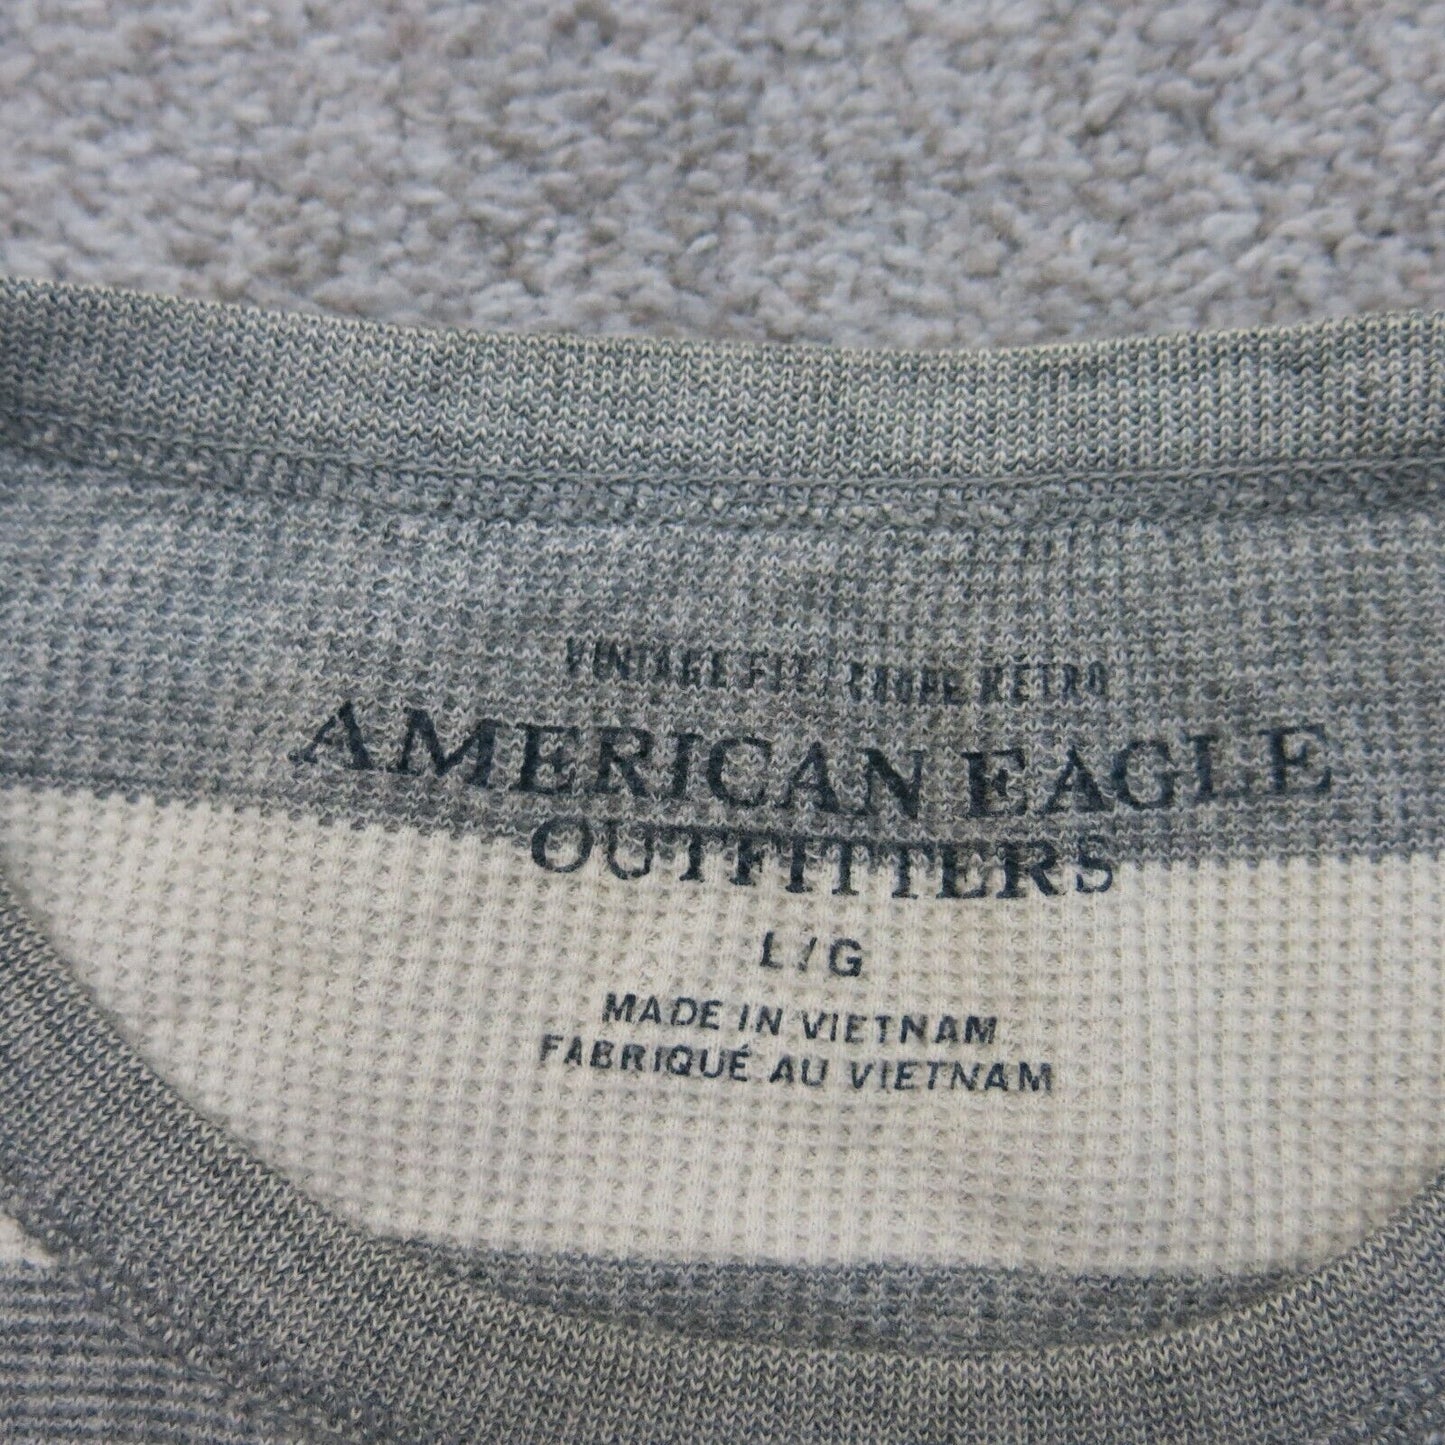 American Eagle Men's T-Shirt - Grey - L